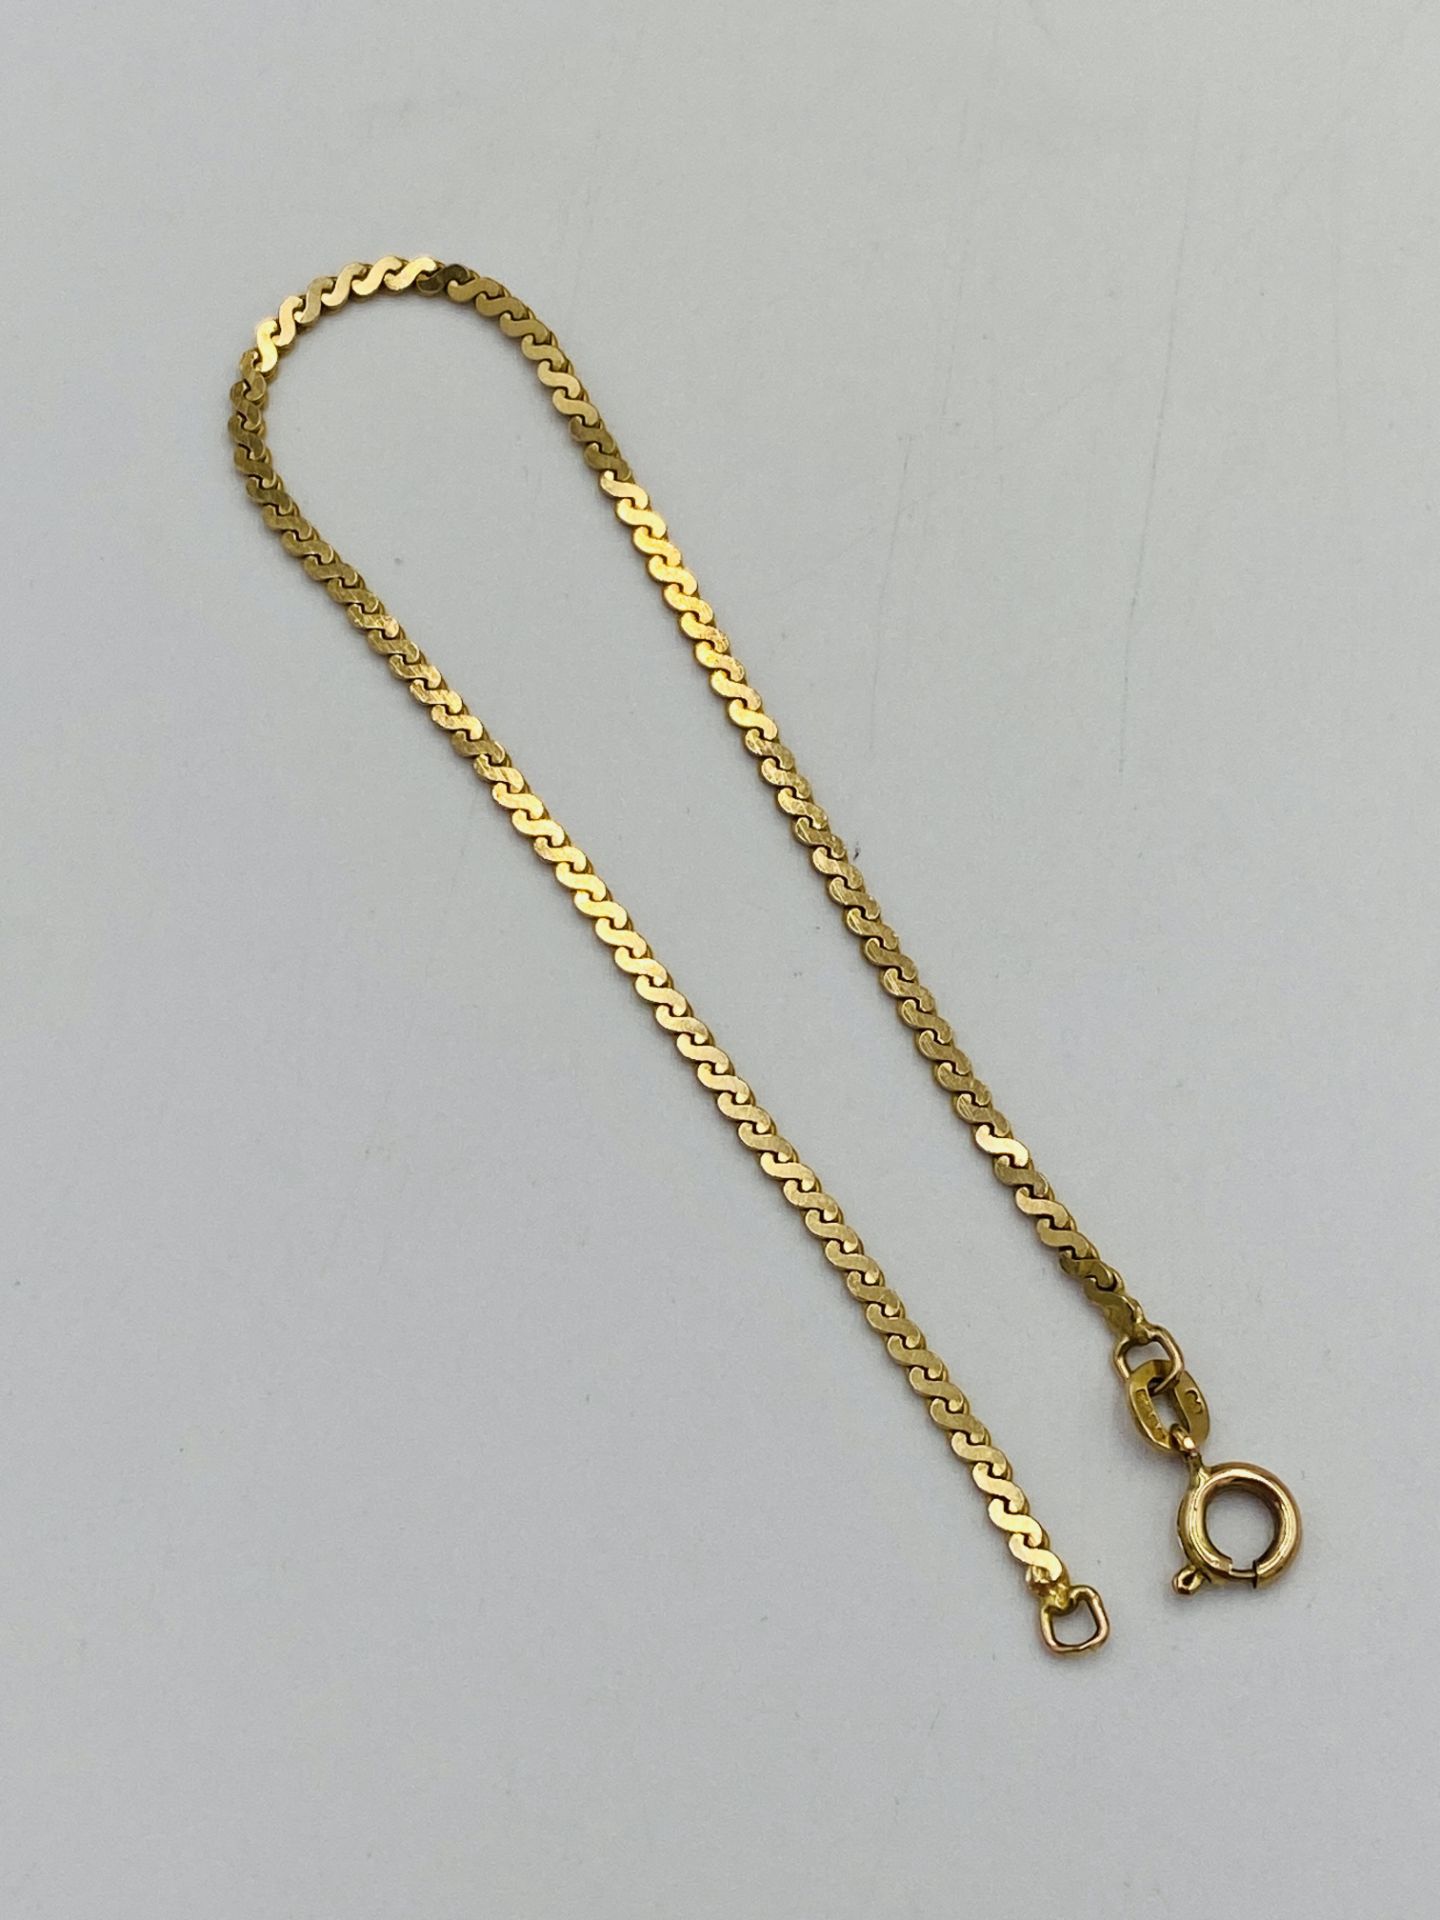 9ct gold bracelet - Image 3 of 3